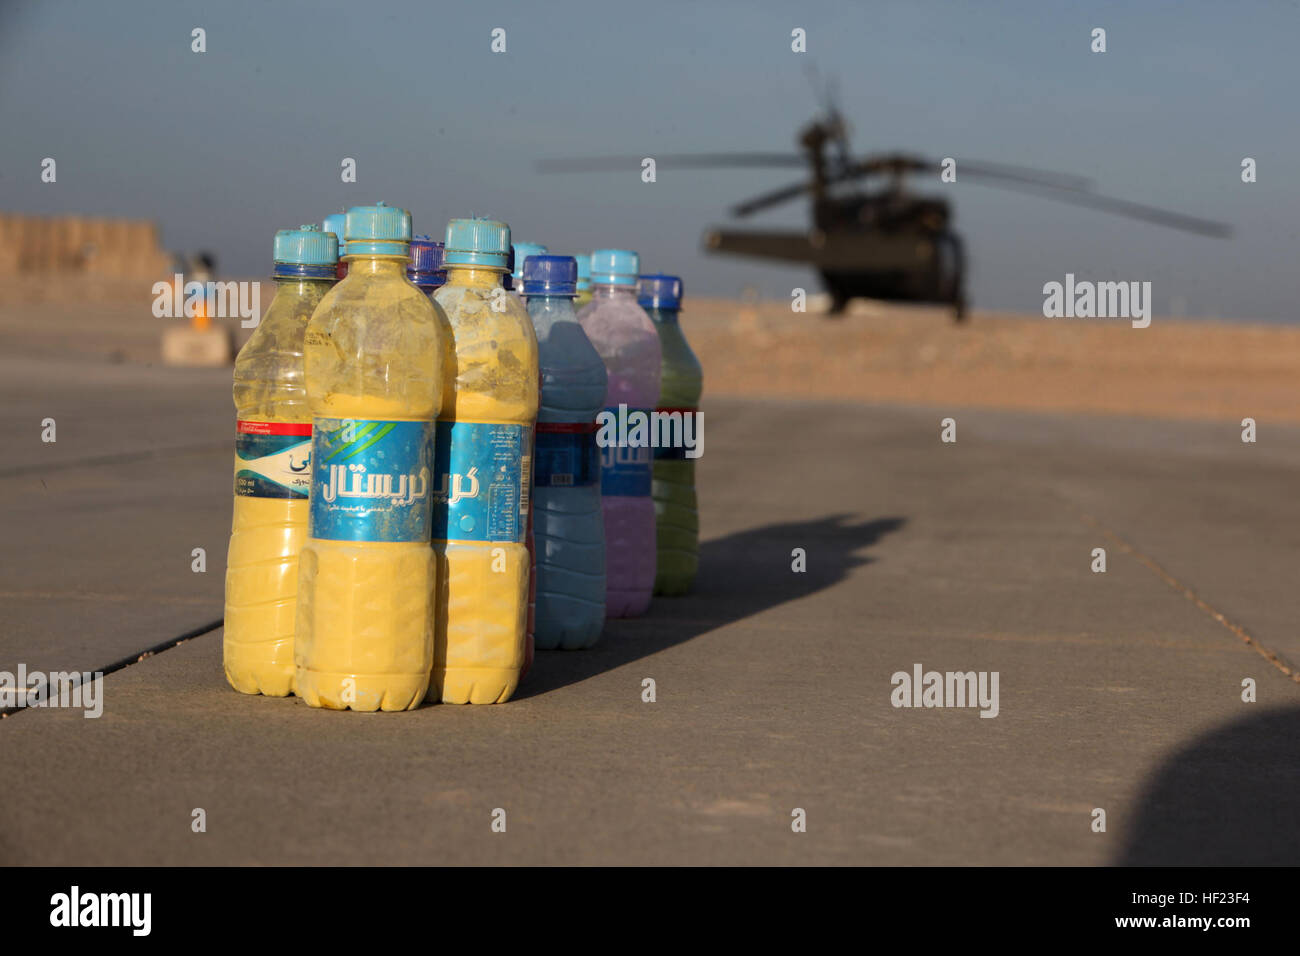 Des bouteilles remplies d'eau la fécule colorés sont placés près de l'aire d'atterrissage des hélicoptères d'évacuation médicale et de 1 kilomètres de tour de passage pour le 'Splash' Dustoff Dash 5K à bord le Camp Bastion, l'Afghanistan, le 19 avril 2014. L'escadron d'évacuation médicale connue sous le nom de "ustoff» a organisé une course de 5 km pour les militaires à bord de Bastion et Camps Sapadalure pour apporter un peu de plaisir et de soulagement du stress pour les forces de coalition du Commandement régional (Sud-ouest). Les participants ont été encouragés à s'habiller en costumes et accessoires pour l'exécuter et sortir à établir de bons rapports. L'USMC (Photo : Sgt. Frances Johnson/Re Banque D'Images